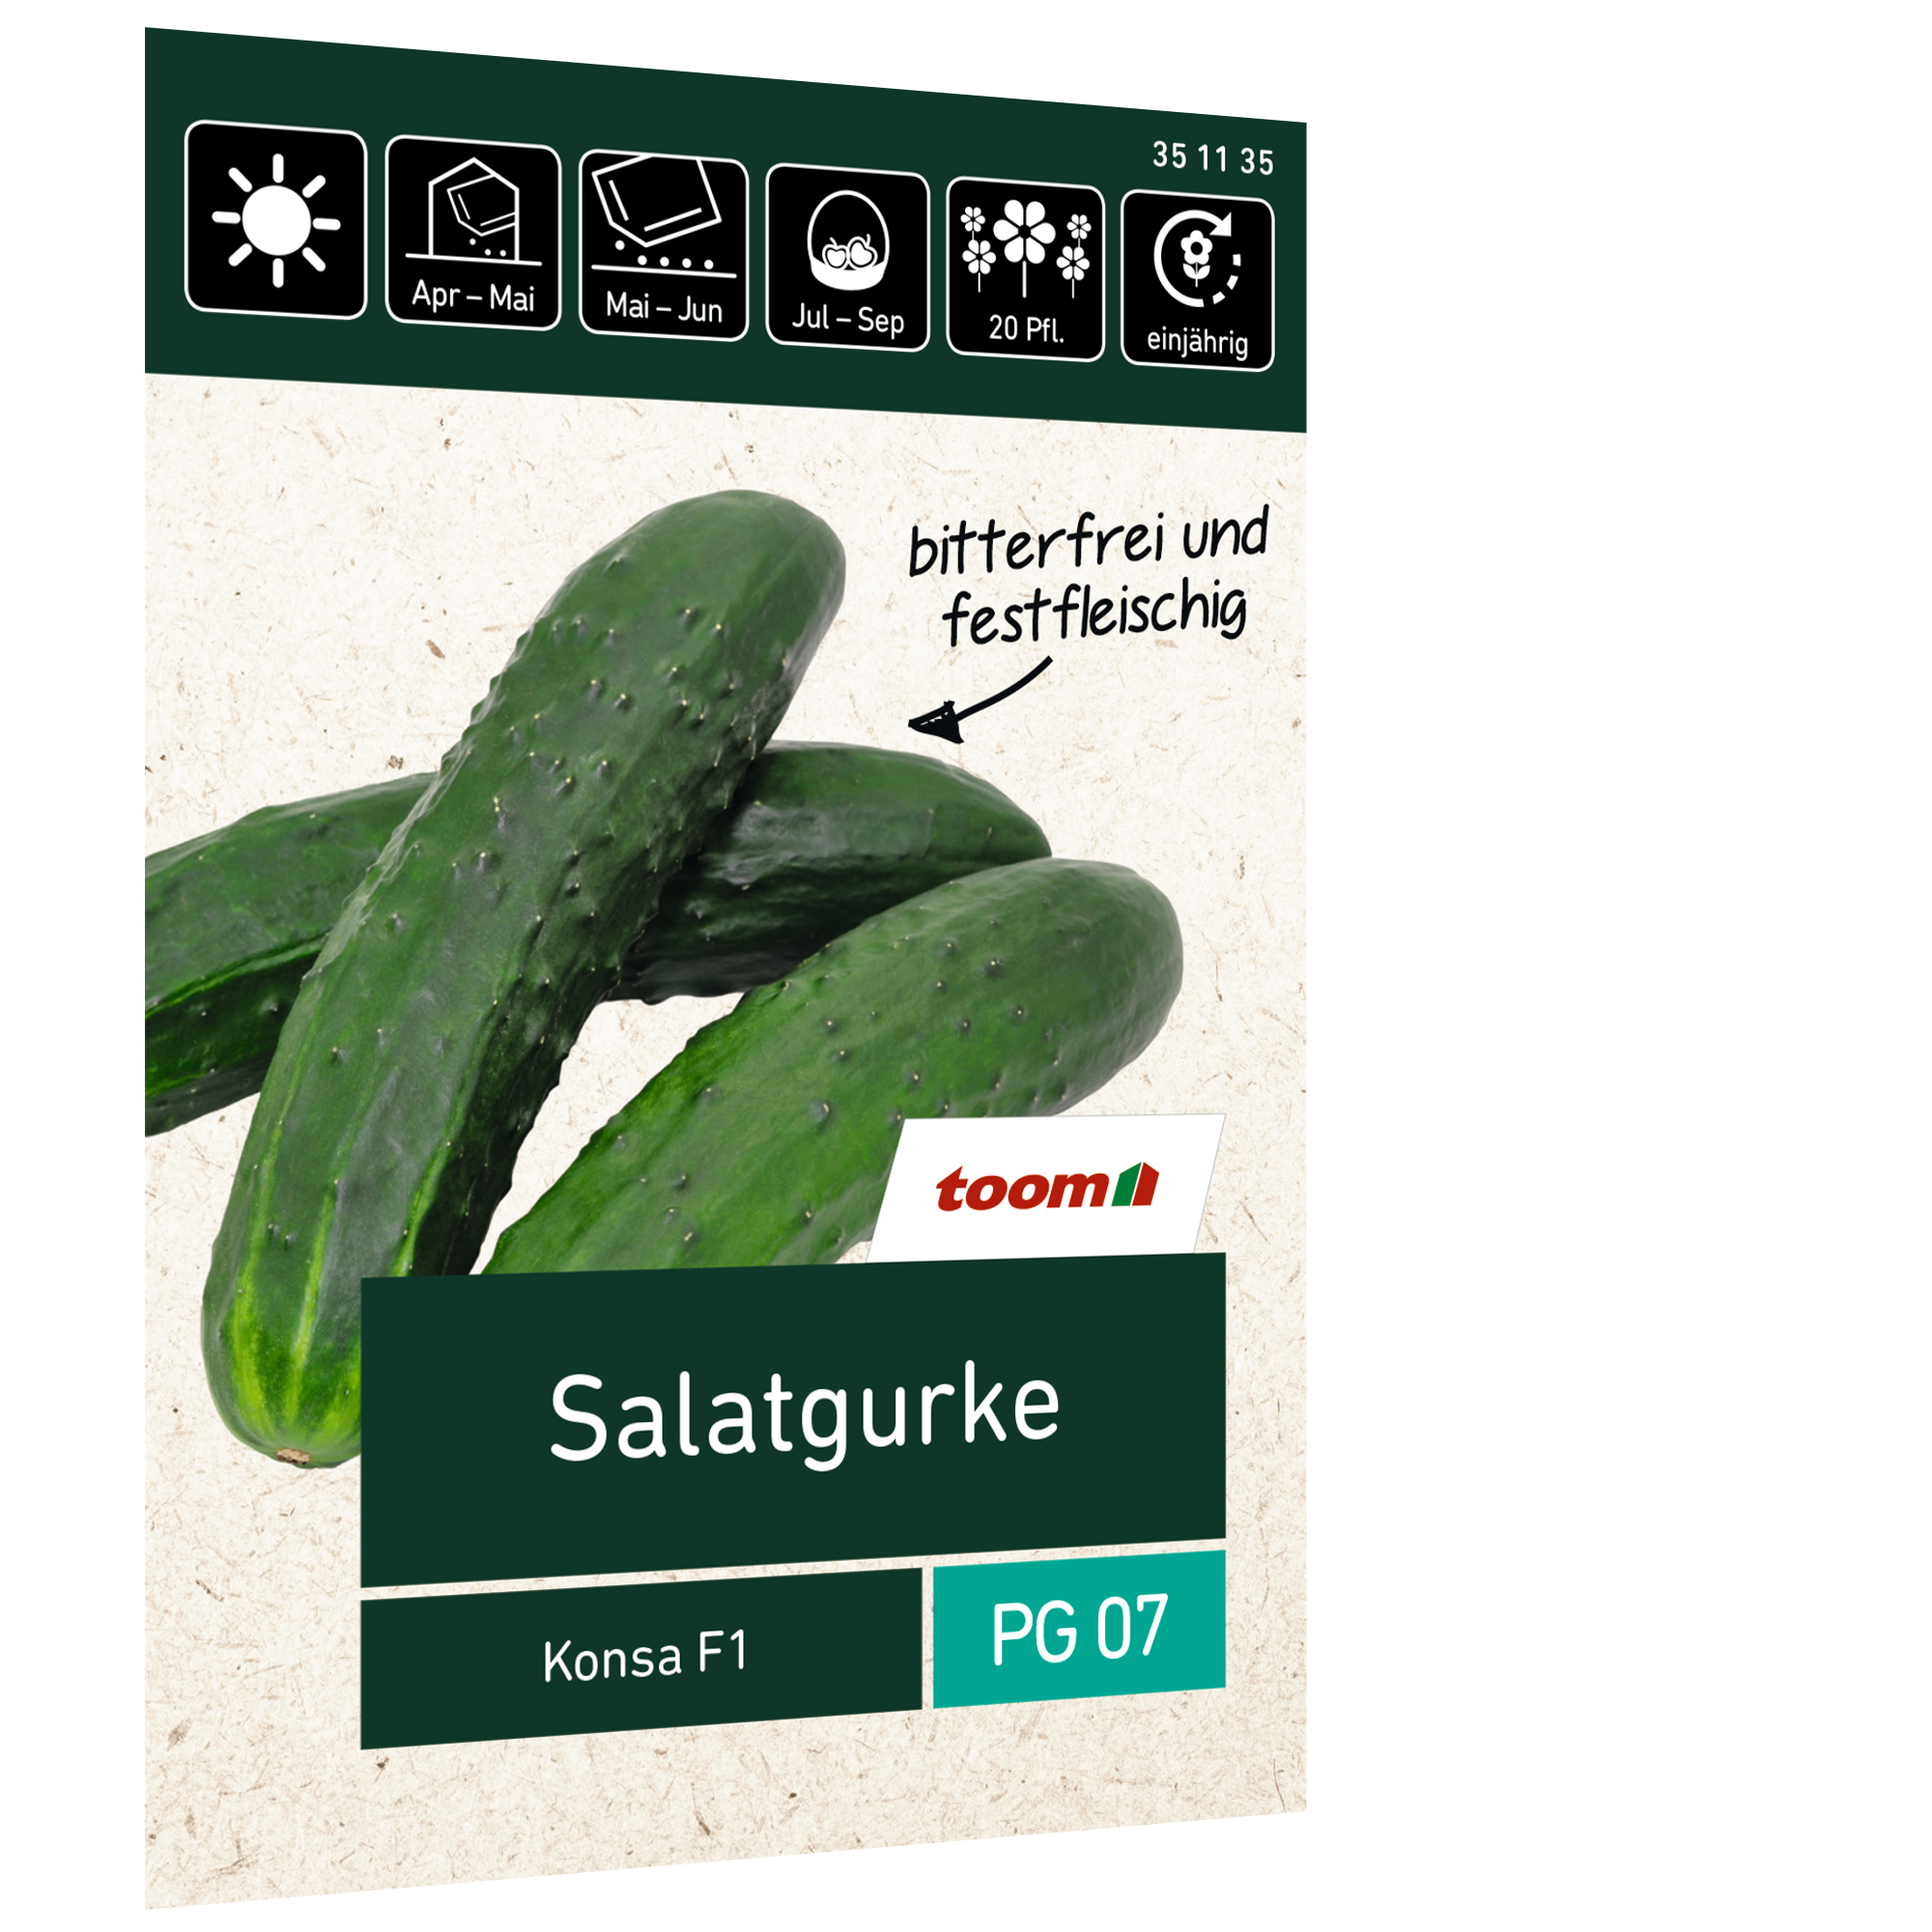 Salatgurke 'Konsa F1' + product picture